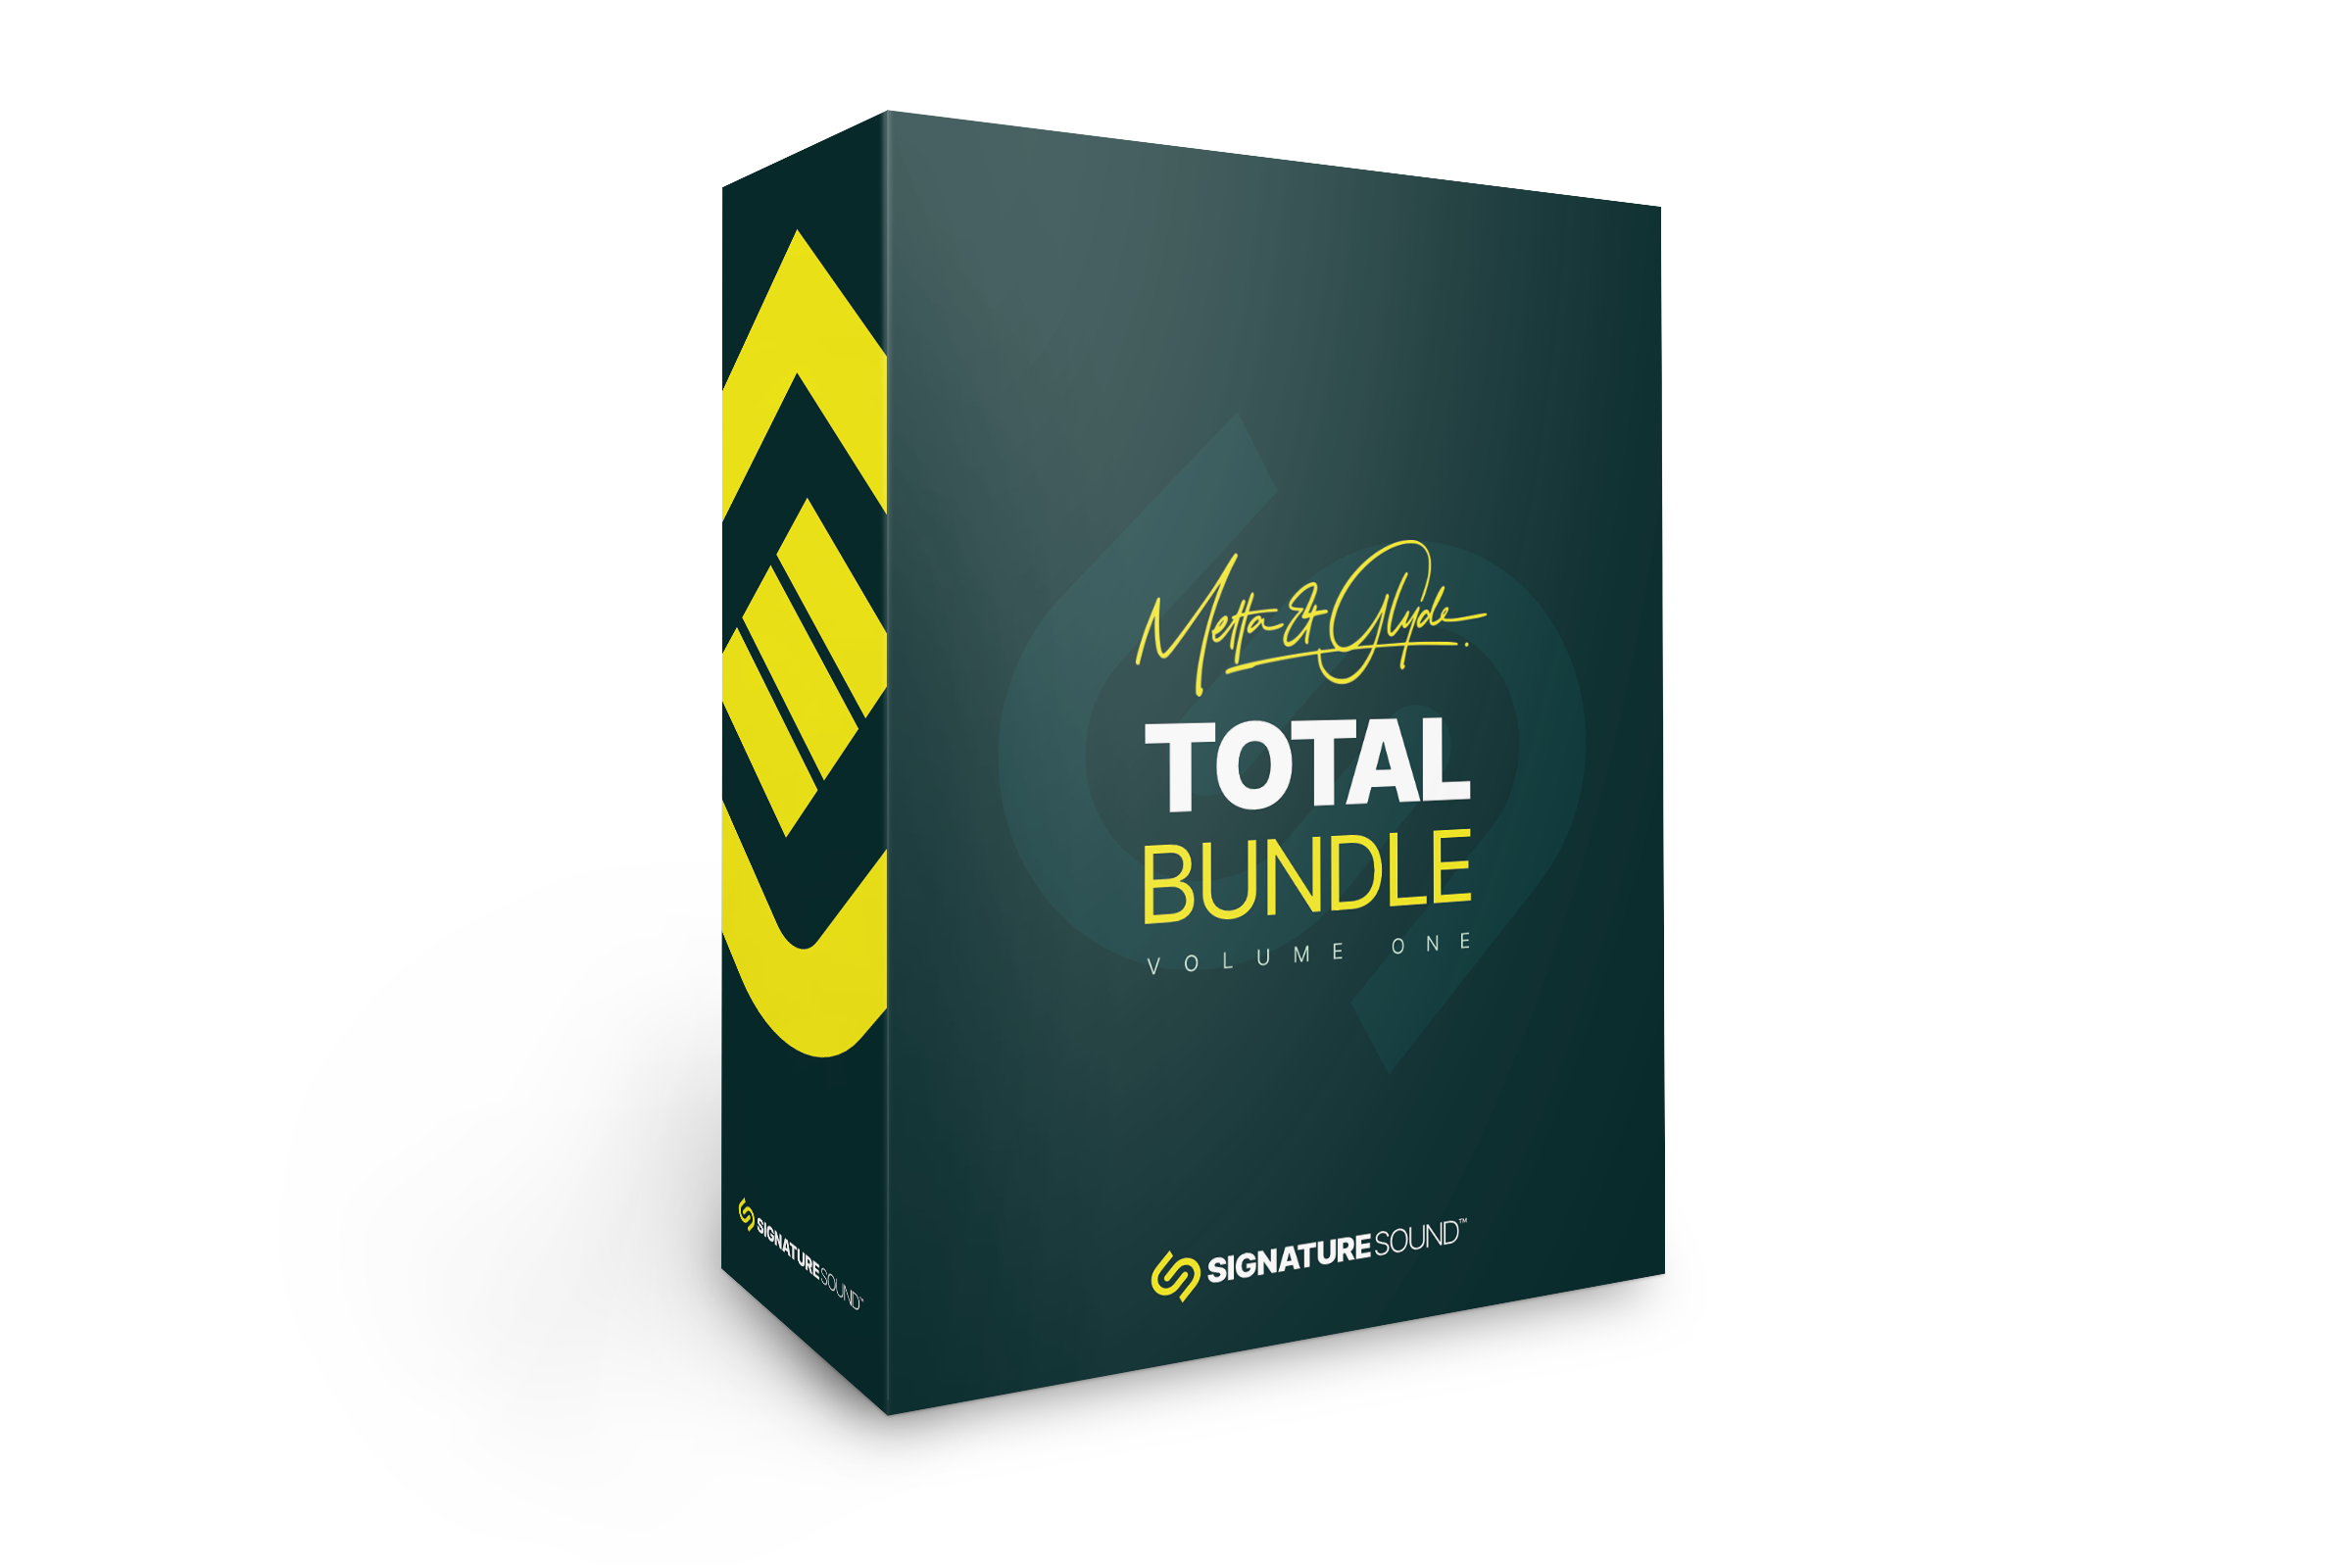 Metta & Glyde Total Bundle Volume One